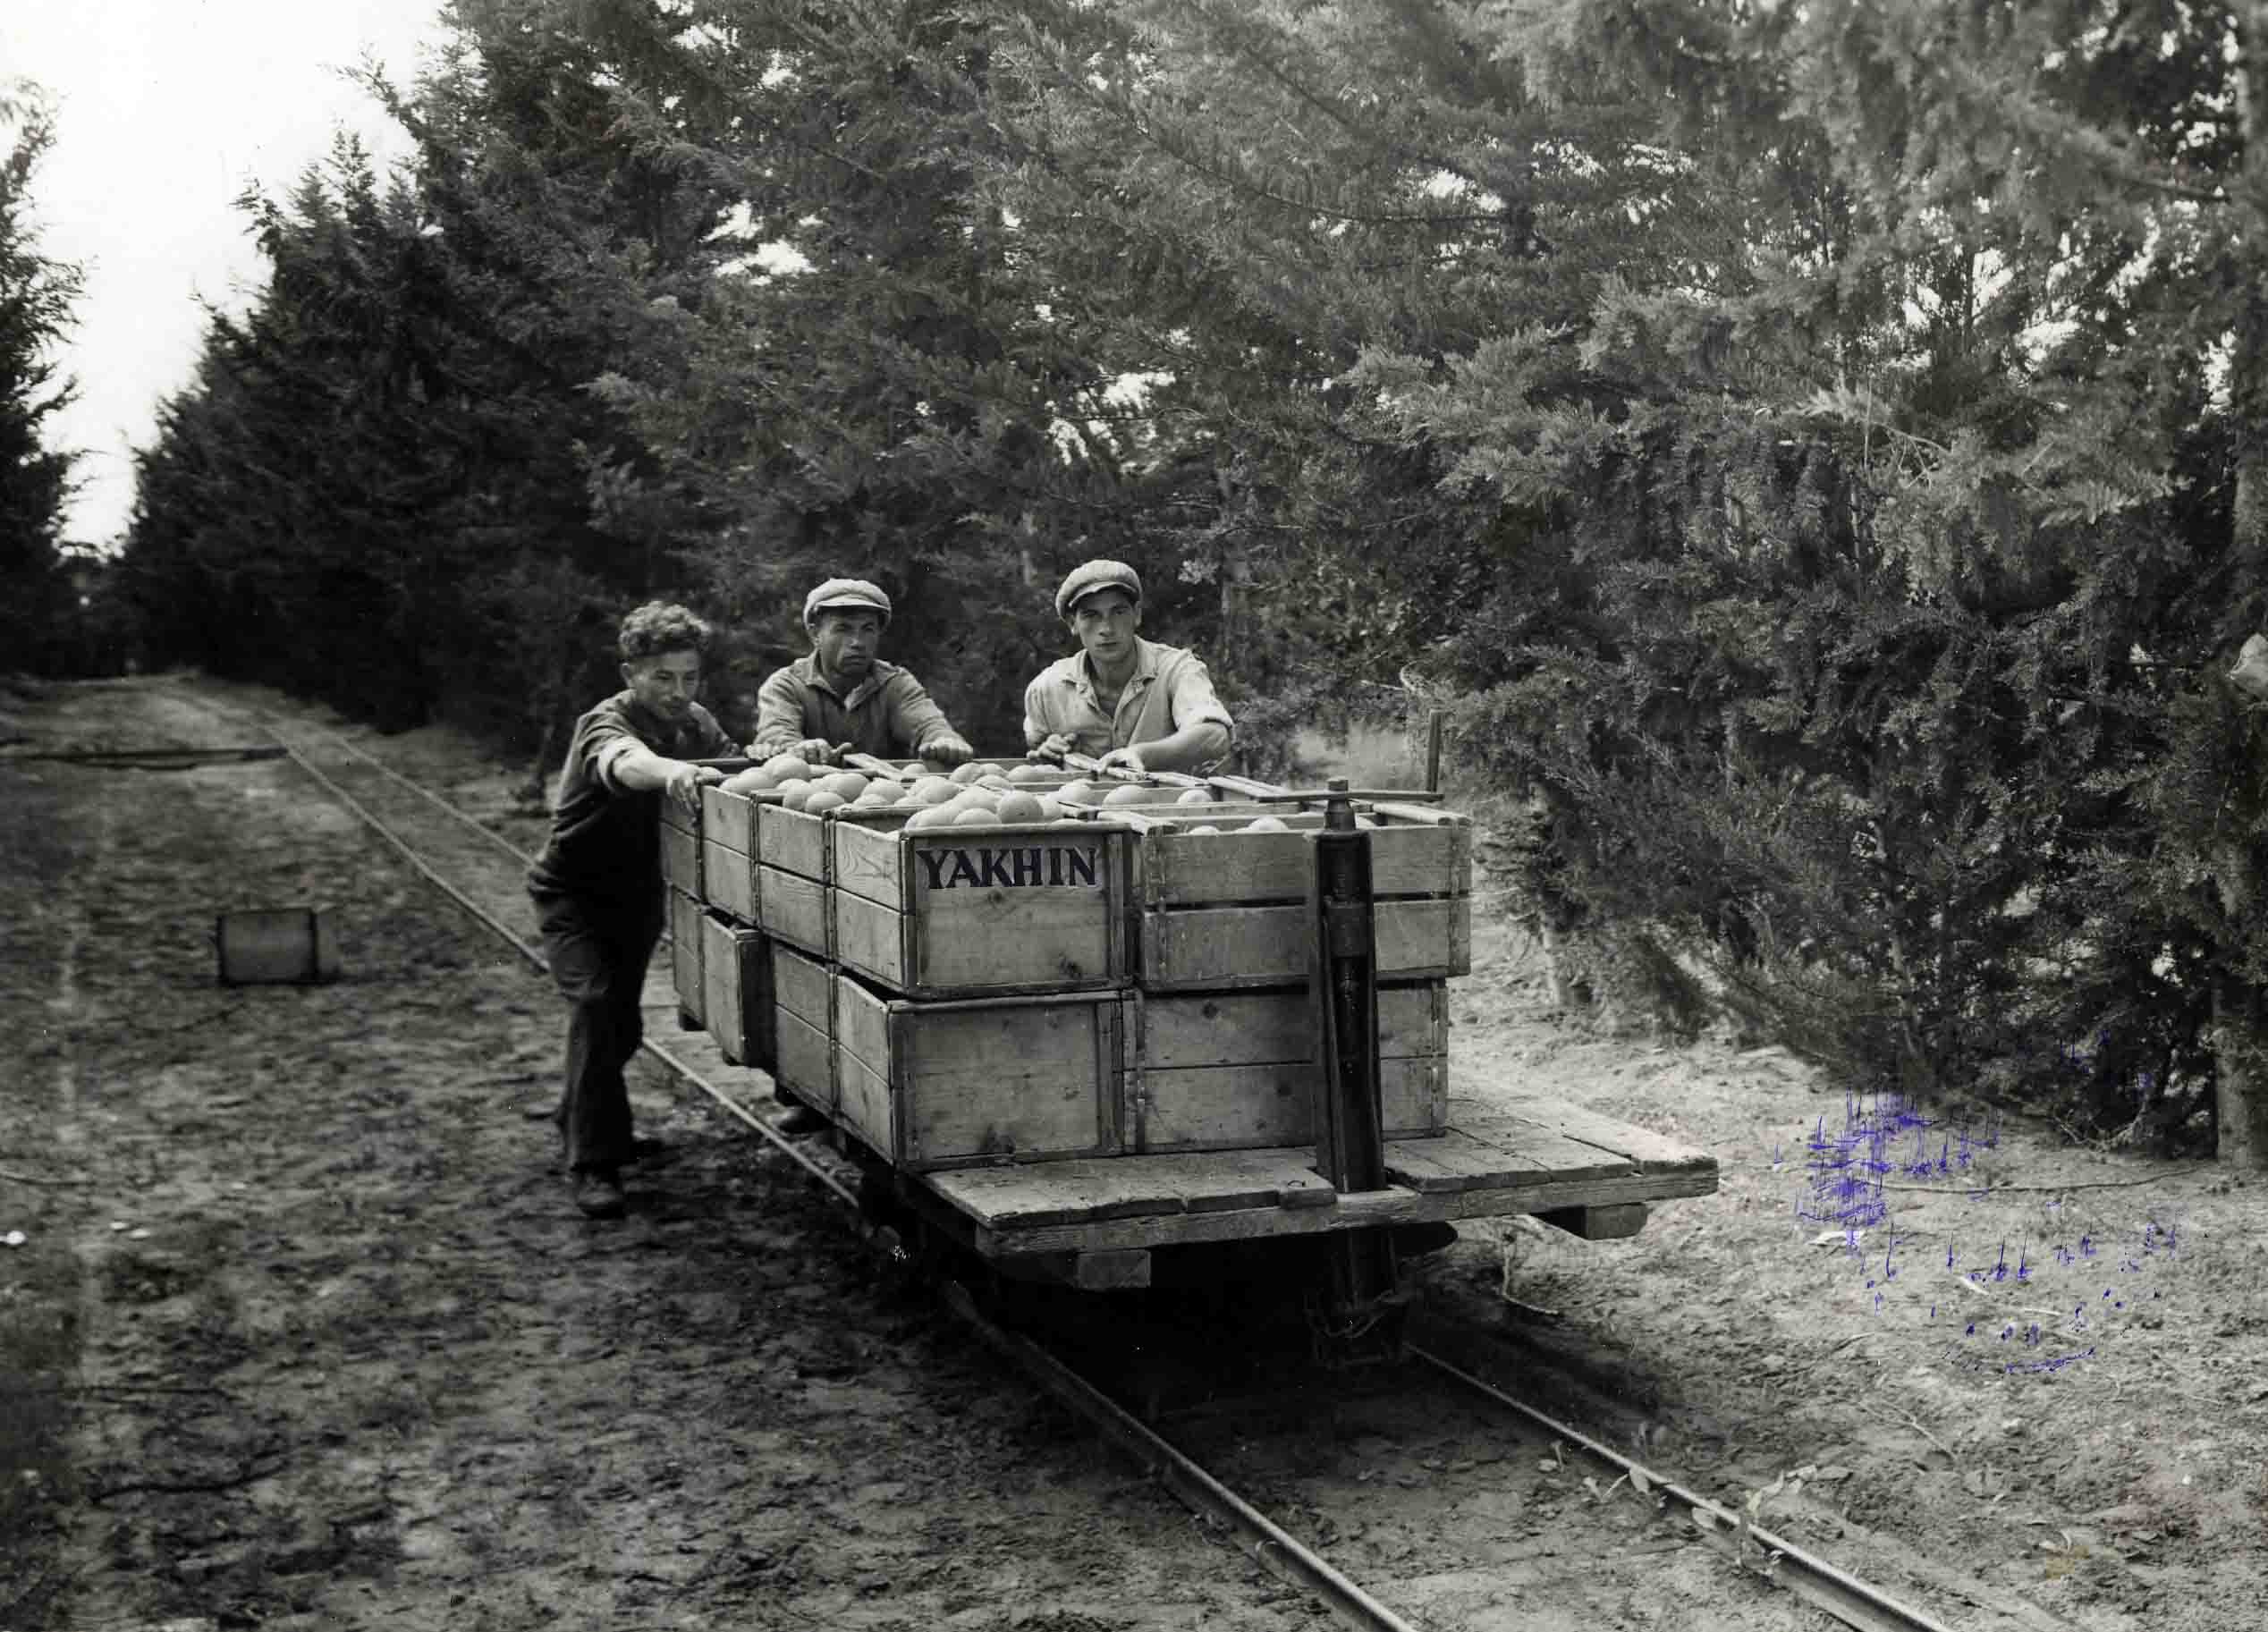 &quot;השנים הראשונות&quot;: פועלים מובילים פרי הדר באמצעות קרונית על מסילה (צילום: זולטן קלוגר, מתוך אוסף מכון לבון)